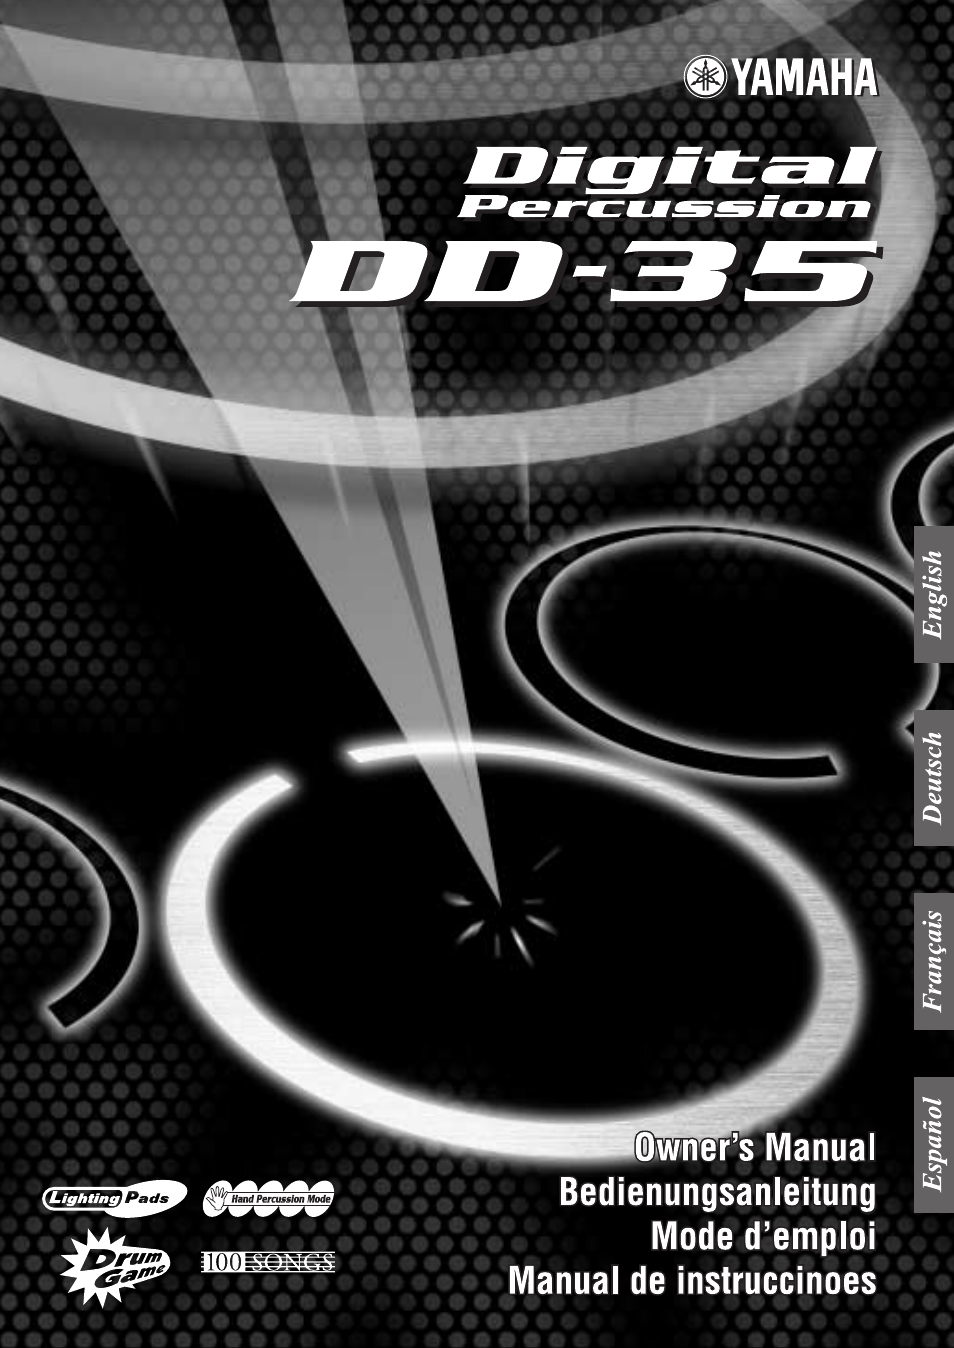 Digital Percussion DD-35